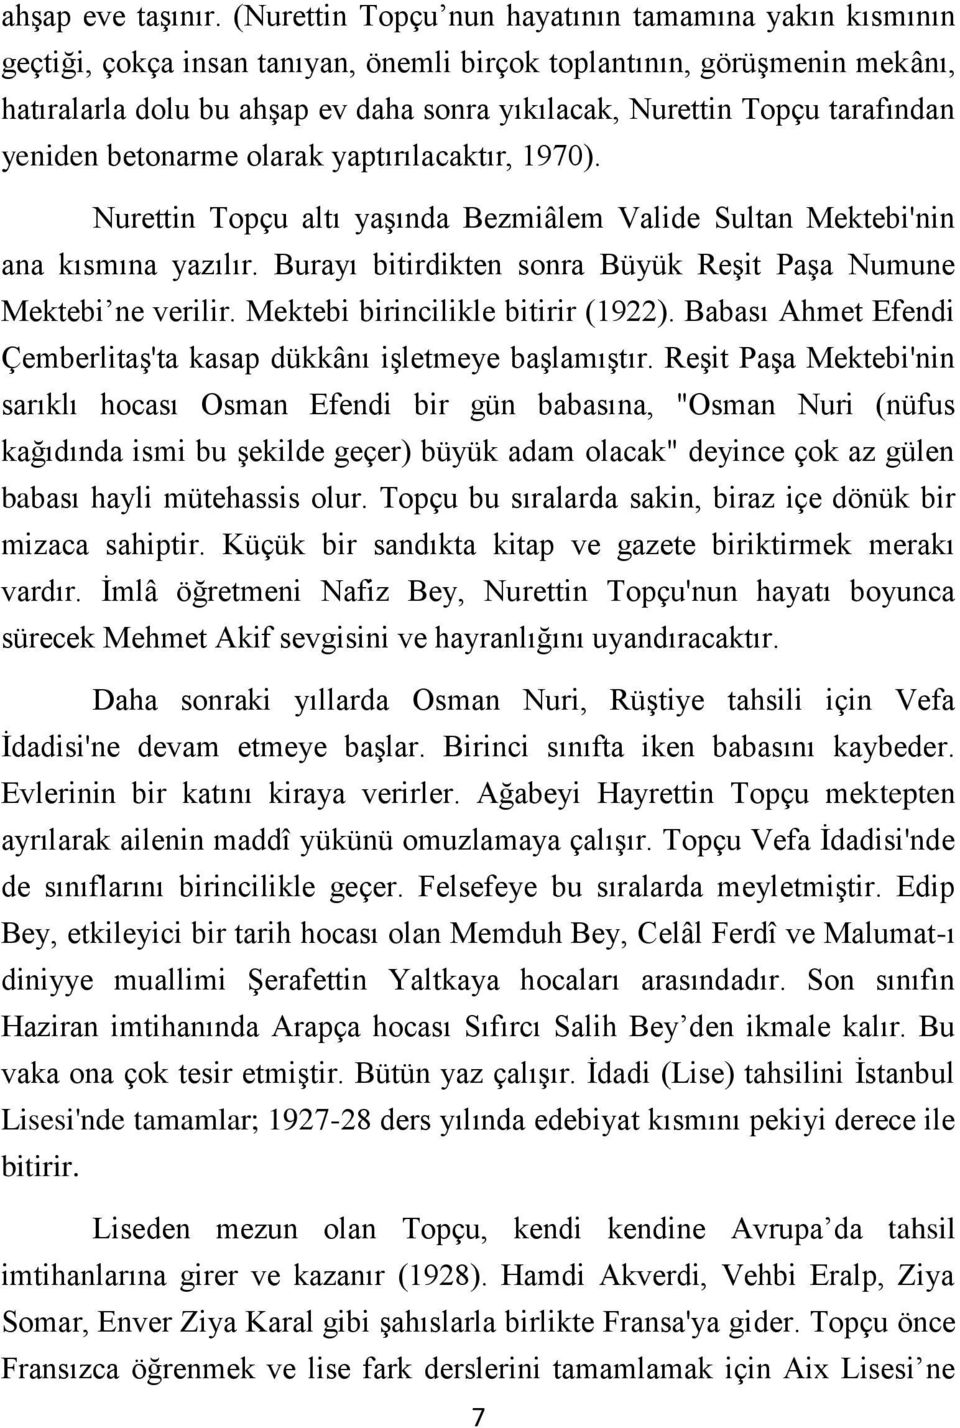 tarafından yeniden betonarme olarak yaptırılacaktır, 1970). Nurettin Topçu altı yaşında Bezmiâlem Valide Sultan Mektebi'nin ana kısmına yazılır.